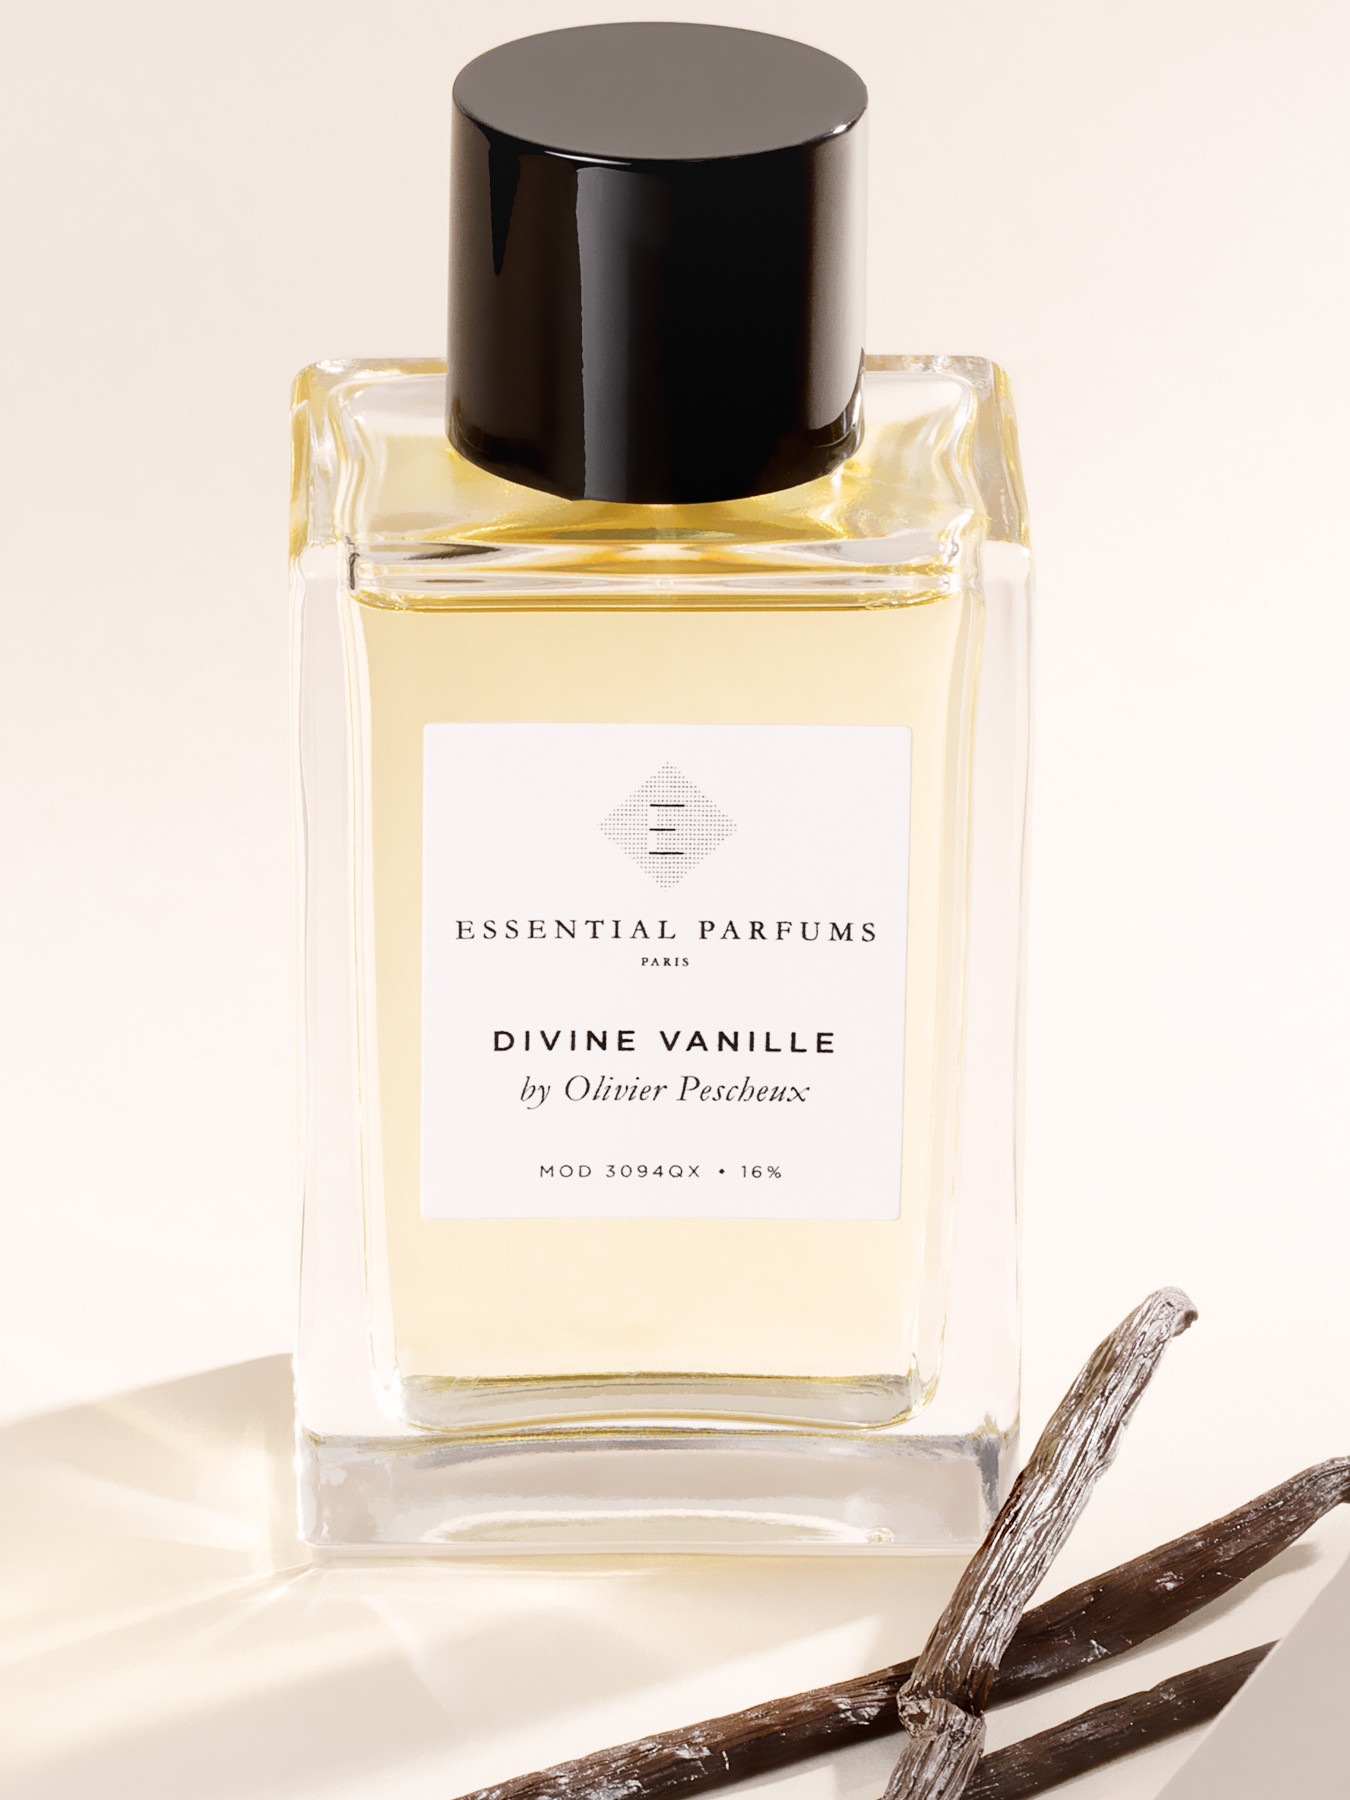 Essential Parfums Divine Vanille Eau de Parfum 100 ml | Fenwick